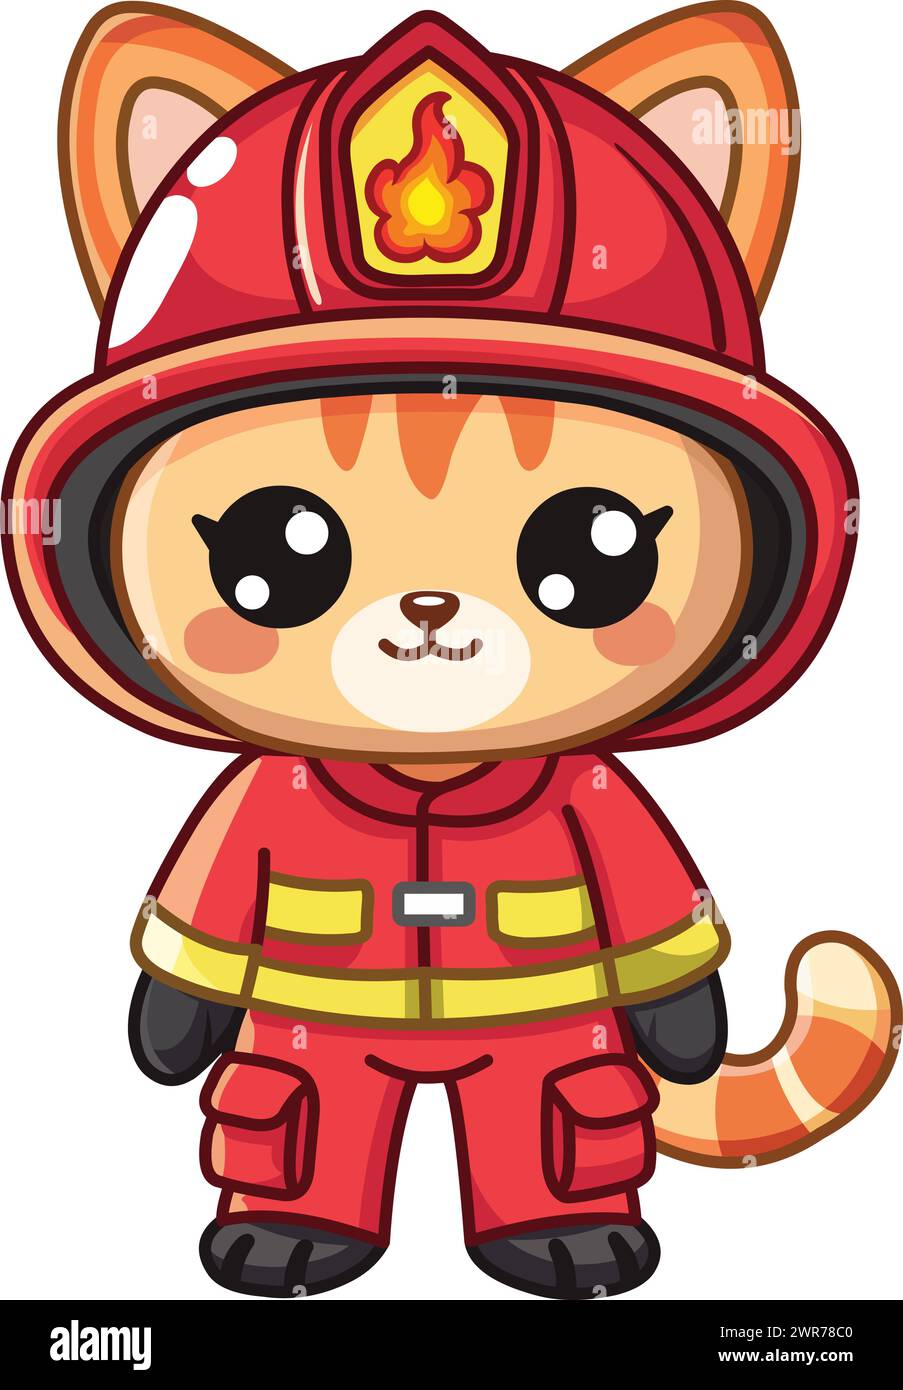 Cute kawaii cat in a firefighter uniform Stock Vector